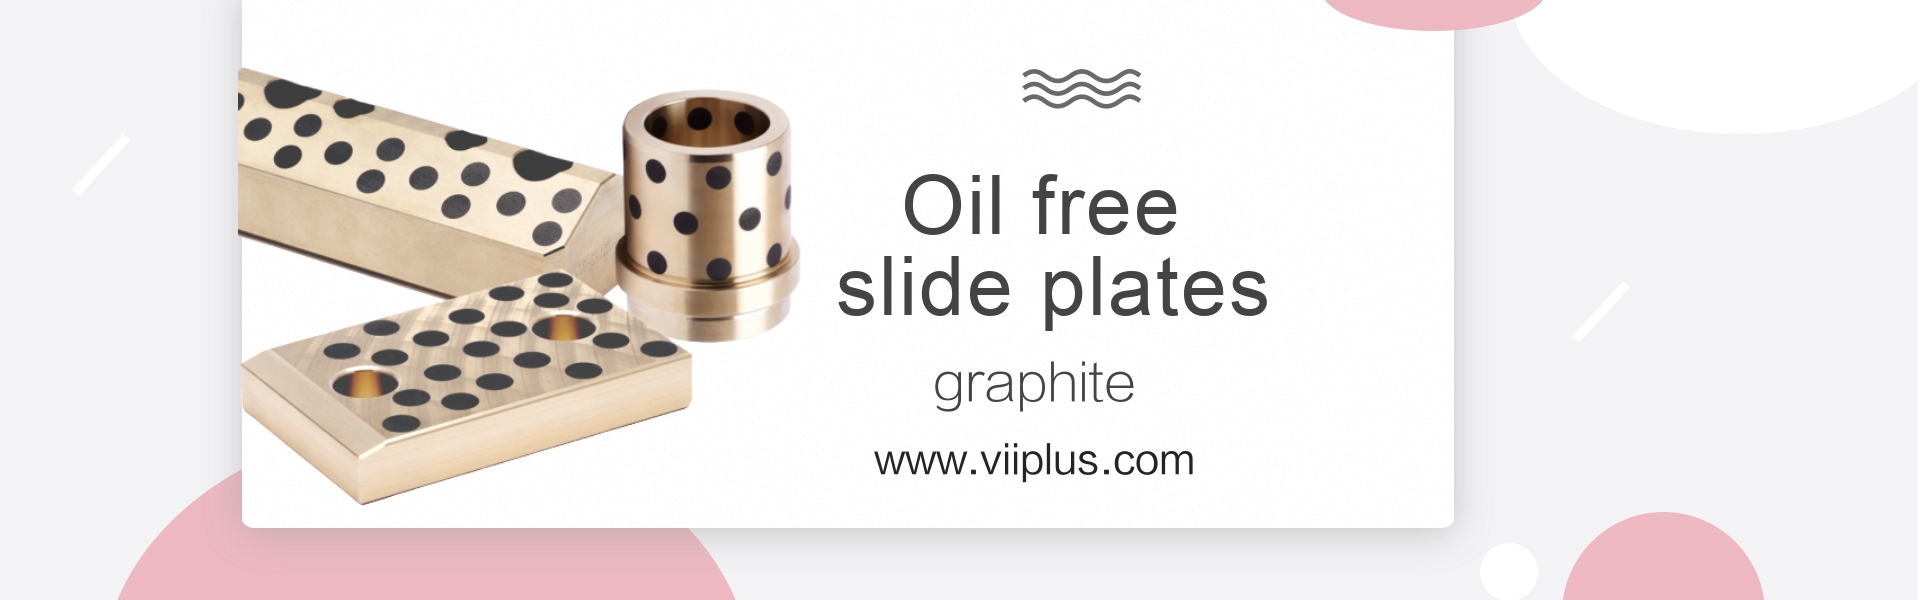 Oil free slide plates